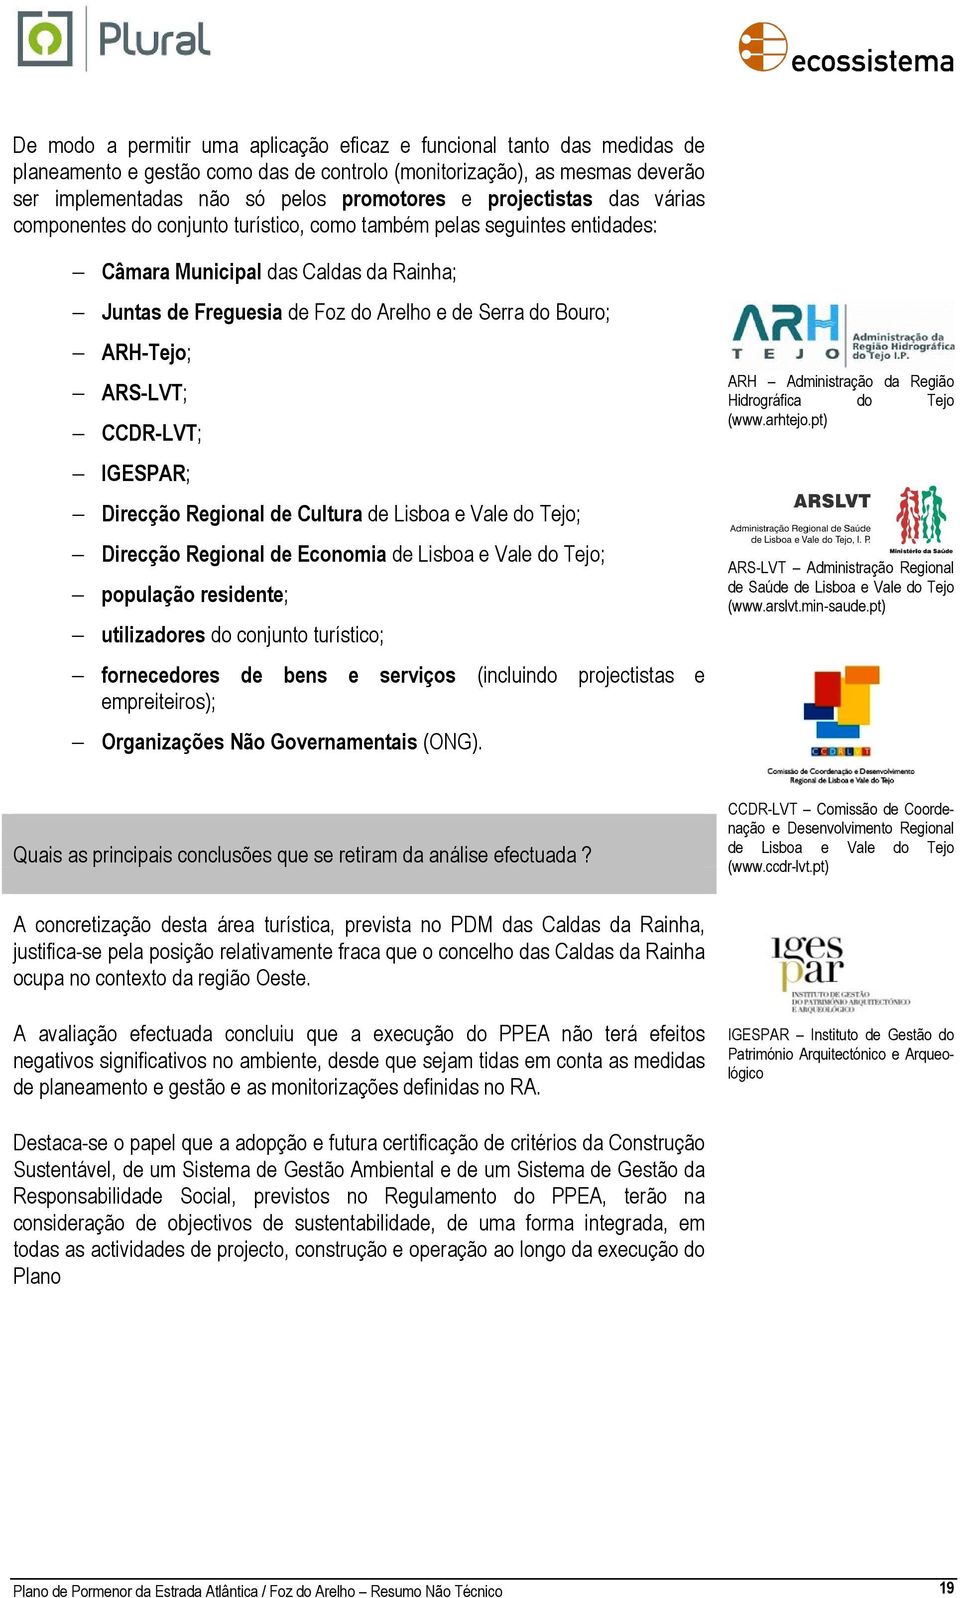 ARH-Tejo; ARS-LVT; CCDR-LVT; IGESPAR; Direcção Regional de Cultura de Lisboa e Vale do Tejo; Direcção Regional de Economia de Lisboa e Vale do Tejo; população residente; utilizadores do conjunto